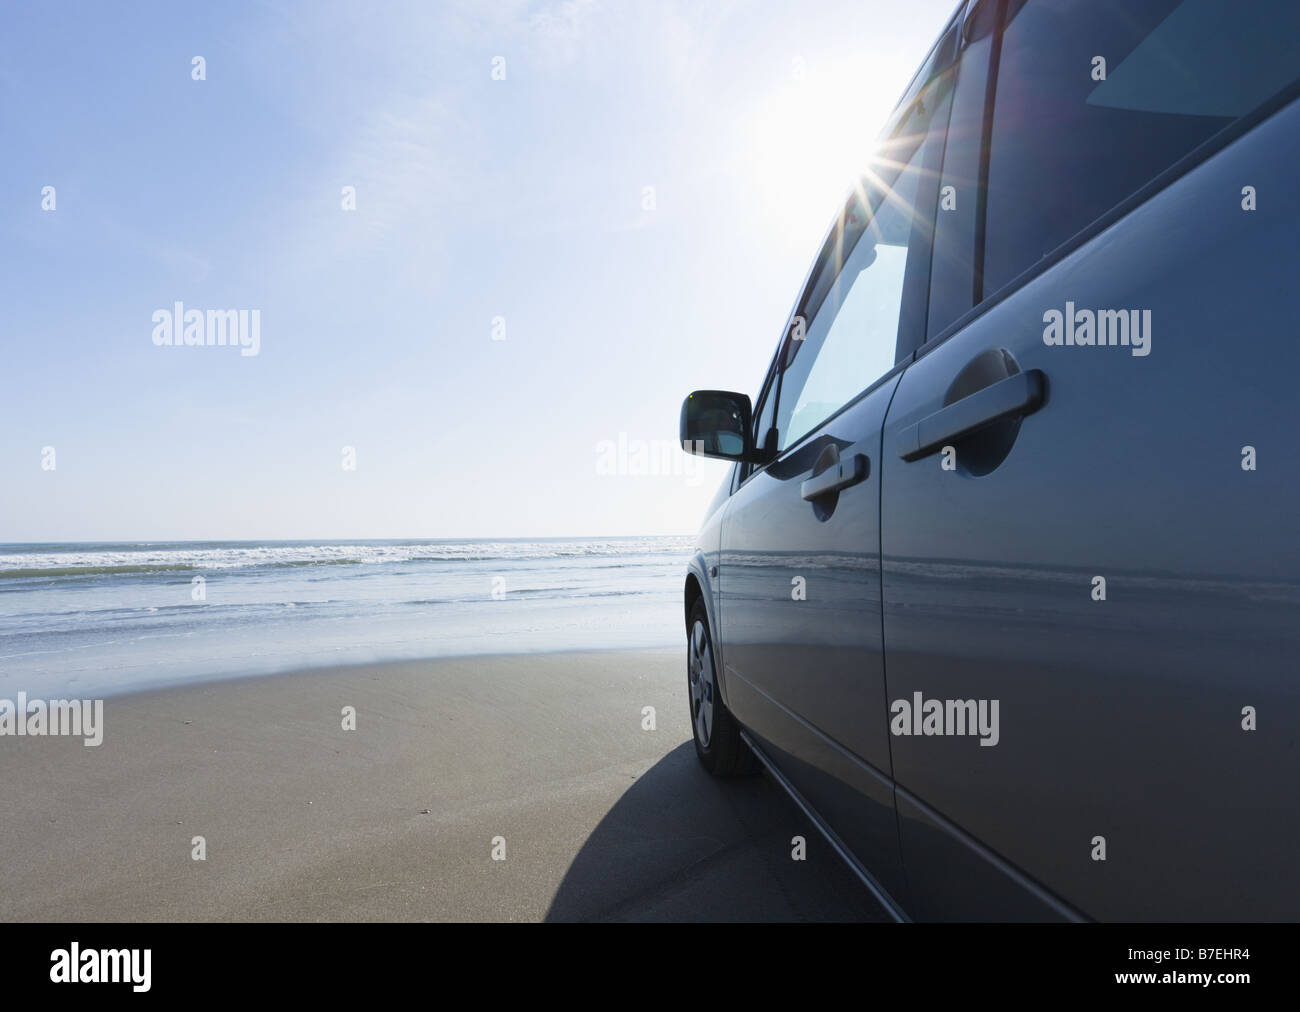 Car on a sandy beach Stock Photo